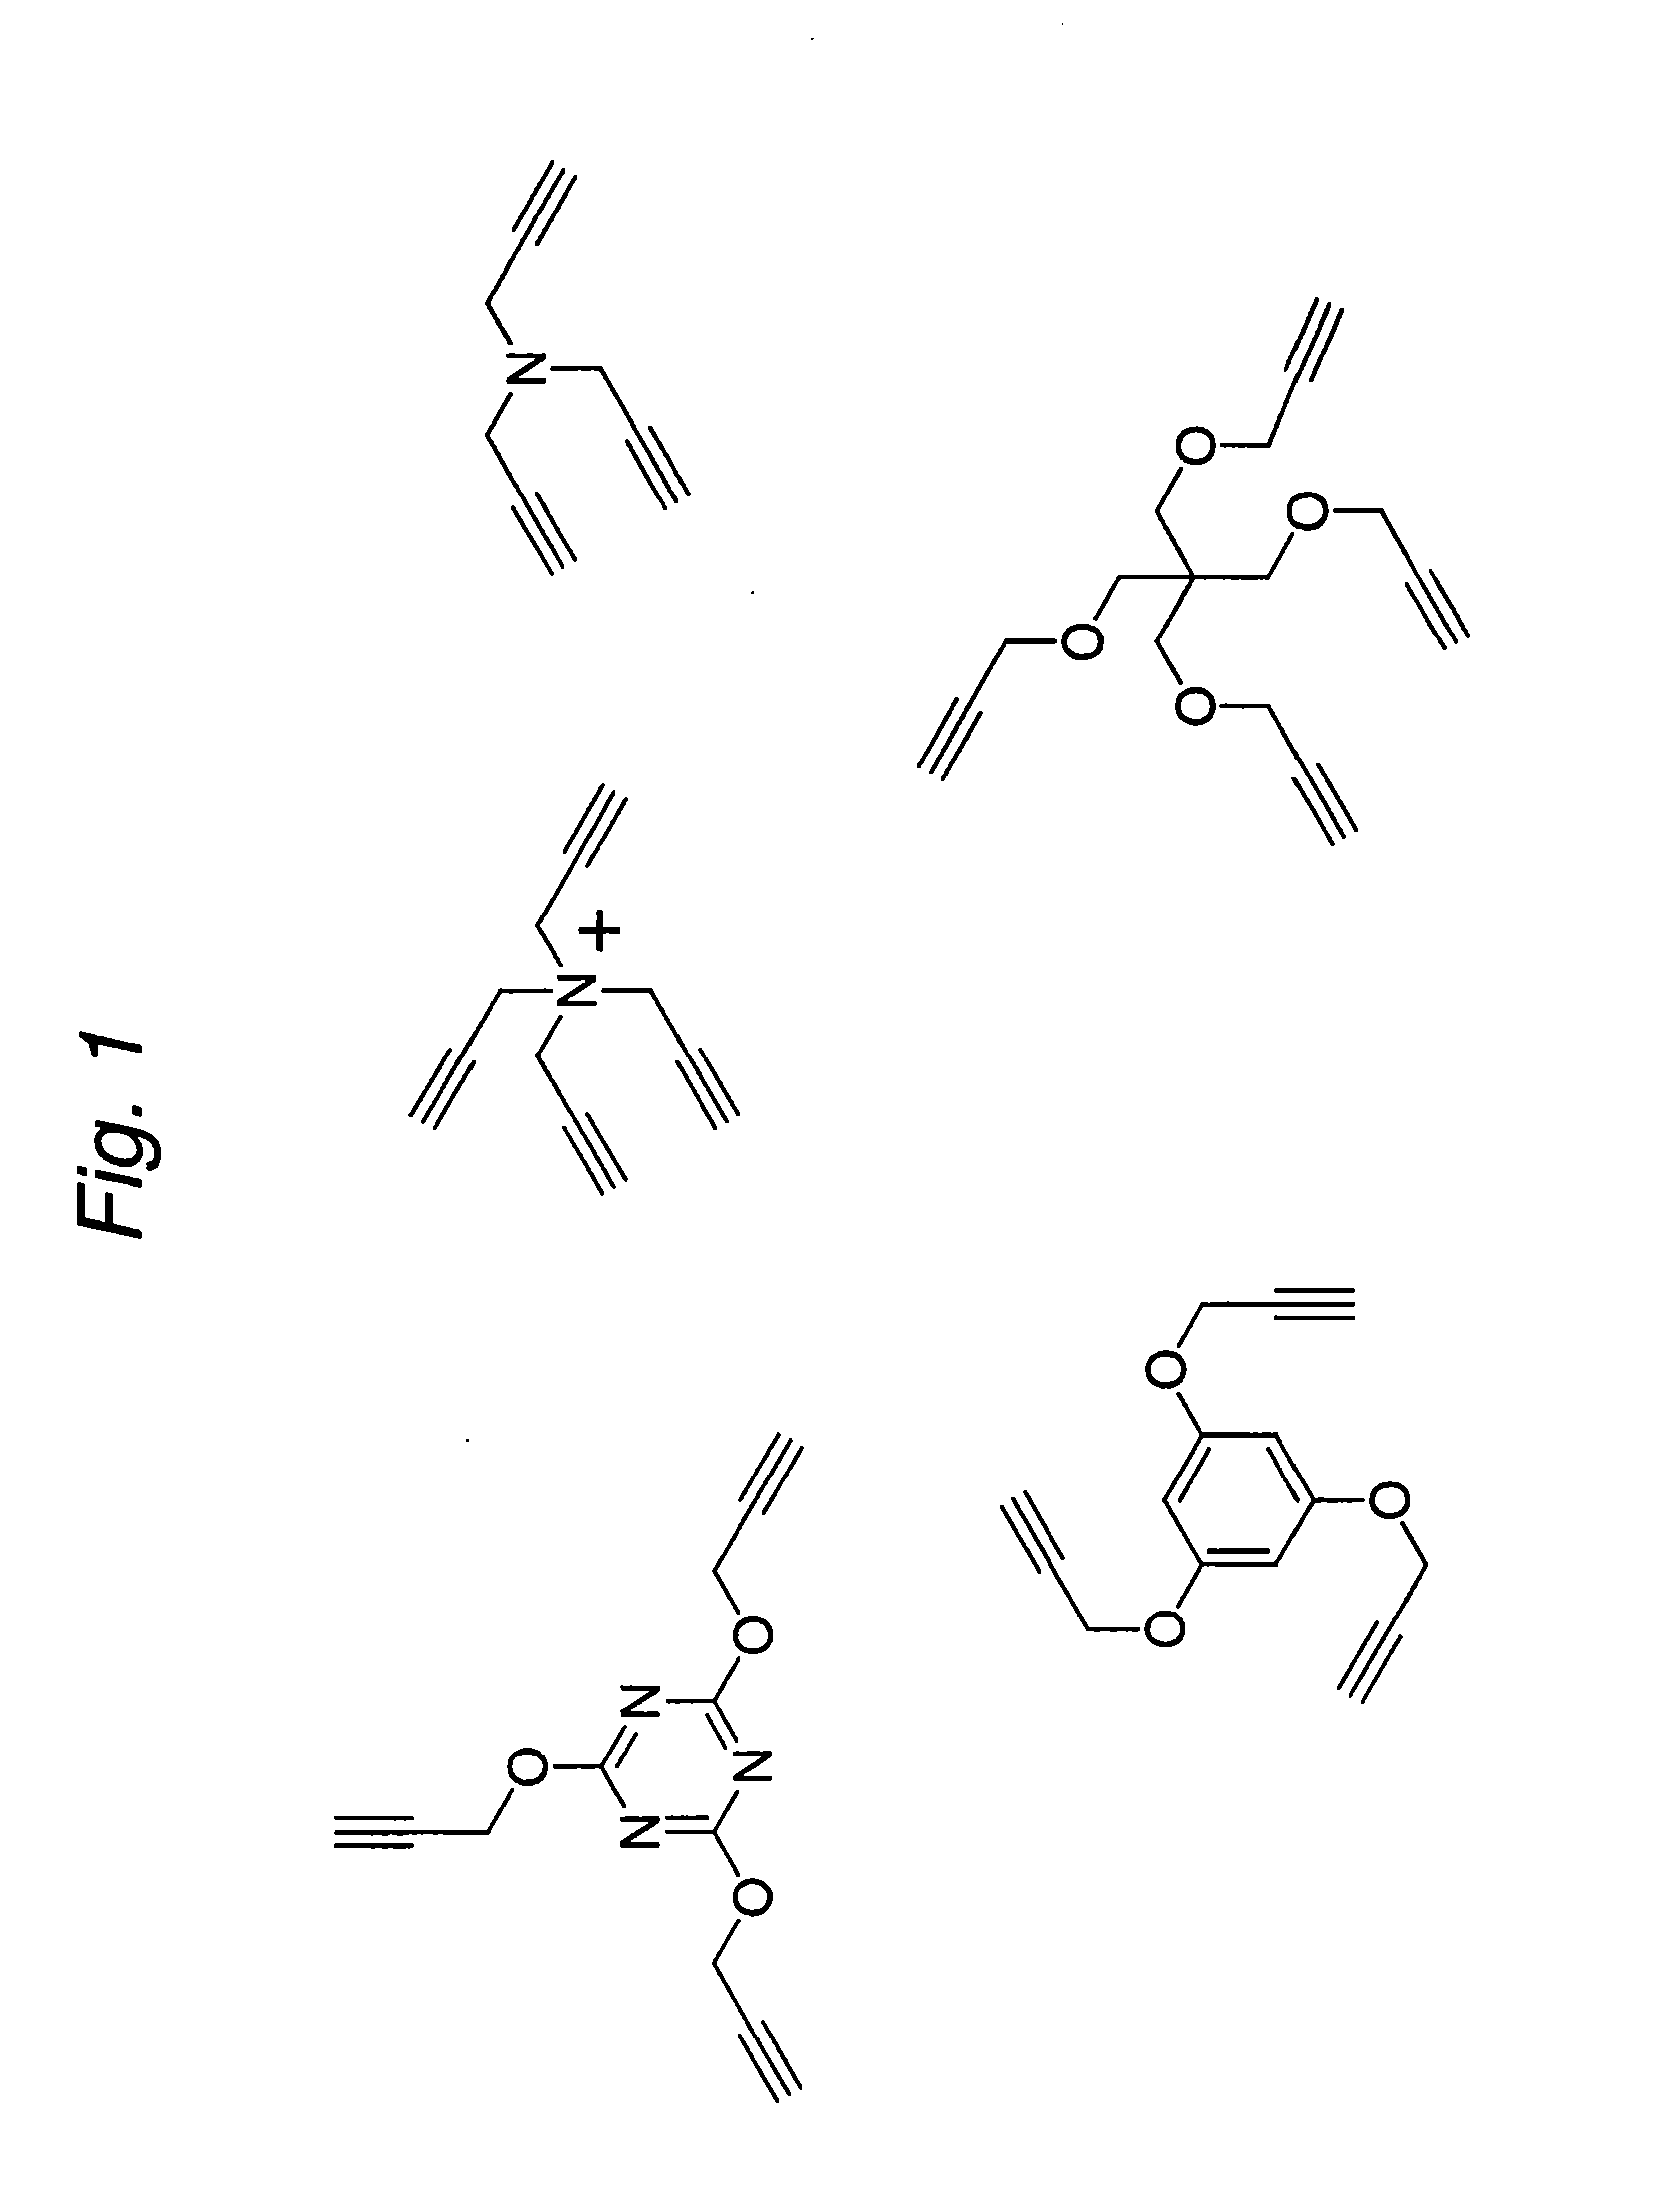 Construction of a Multivalent SCFV Through Alkyne-Azide 1,3-Dipolar Cycloaddition